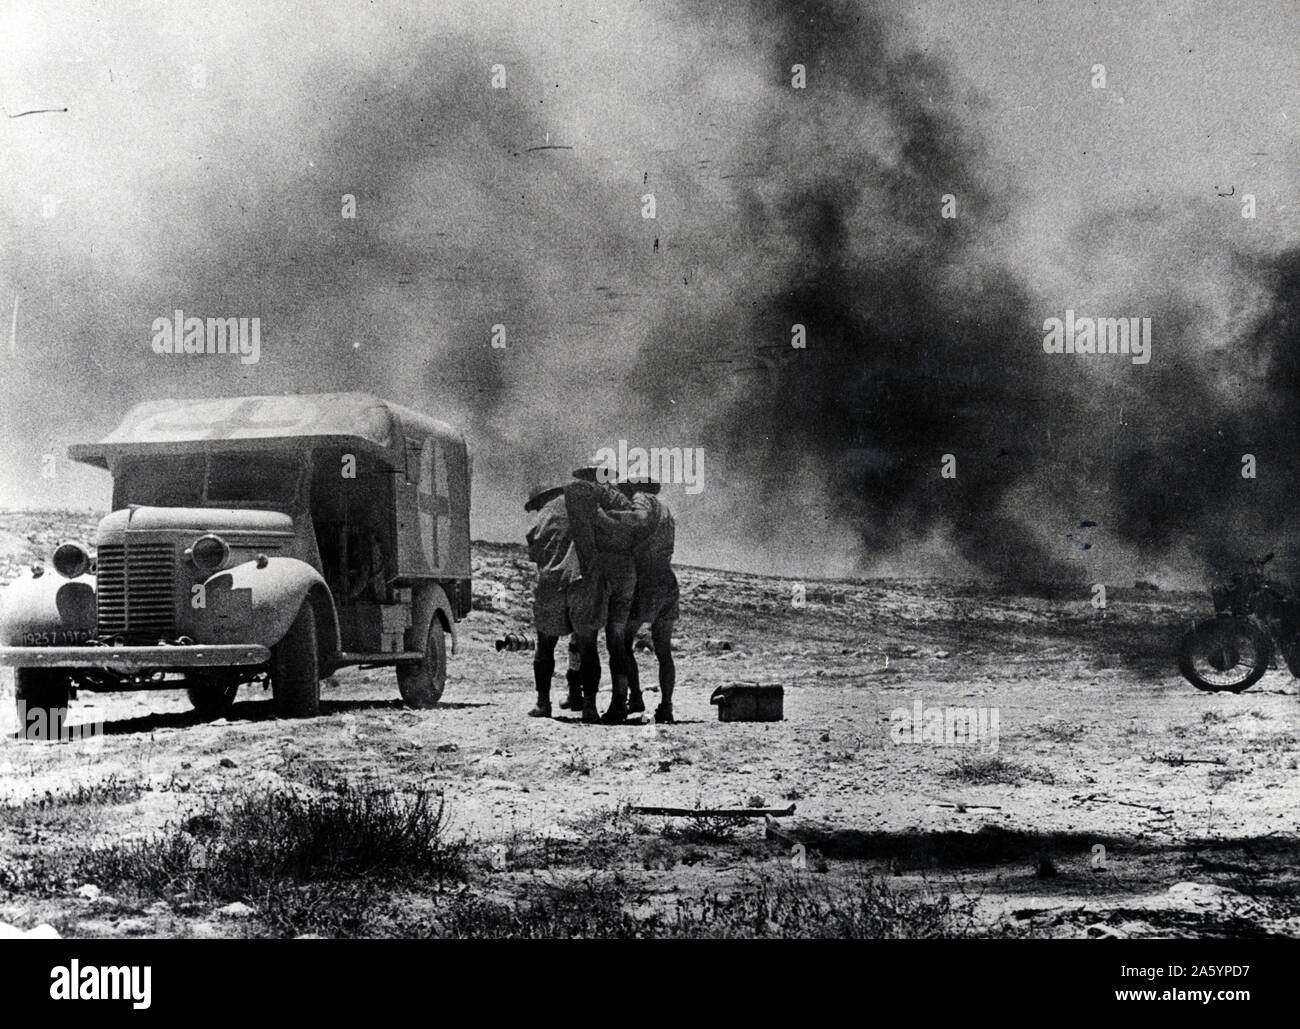 Tirage photographique d'une attaque de l'ennemi sur un convoi du désert d'ambulance. Deux soldats du Royal Army Medical Corps transporte un autre soldat d'une croix rouge, ambulance. Datée 1941 Banque D'Images